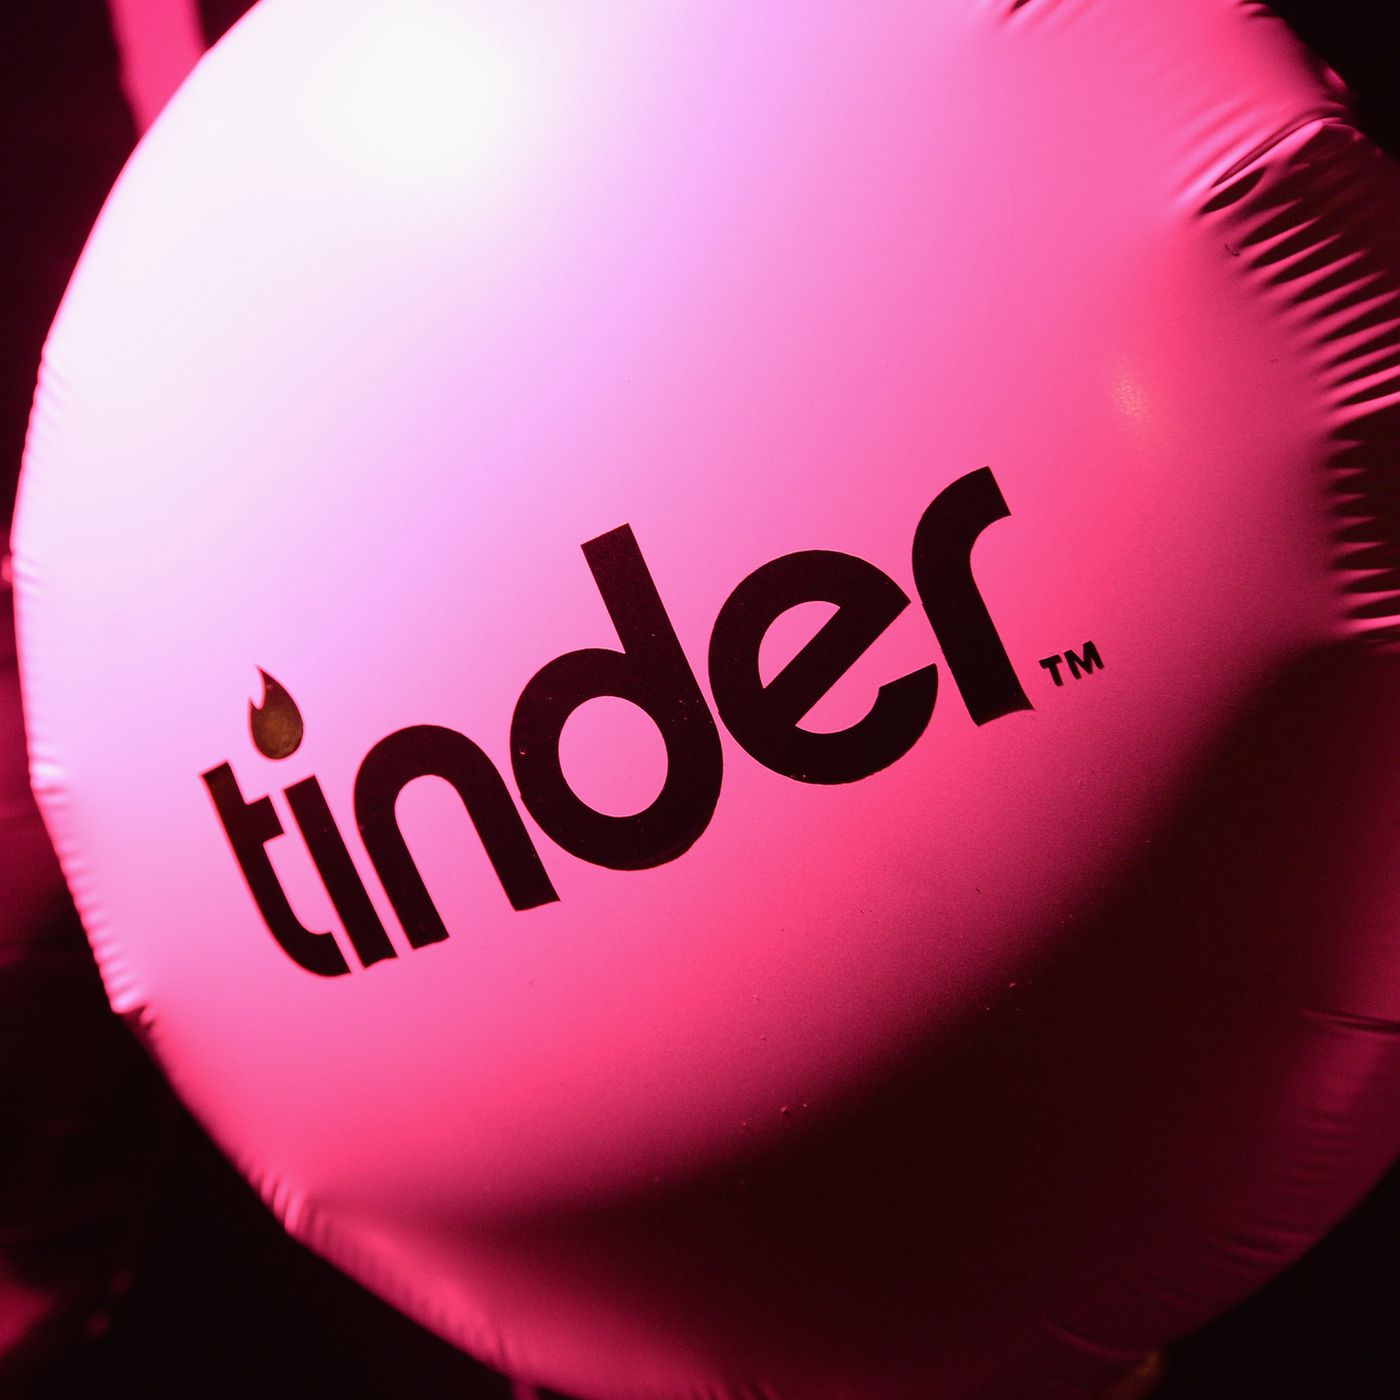 Game tinder sex 'How Tinder